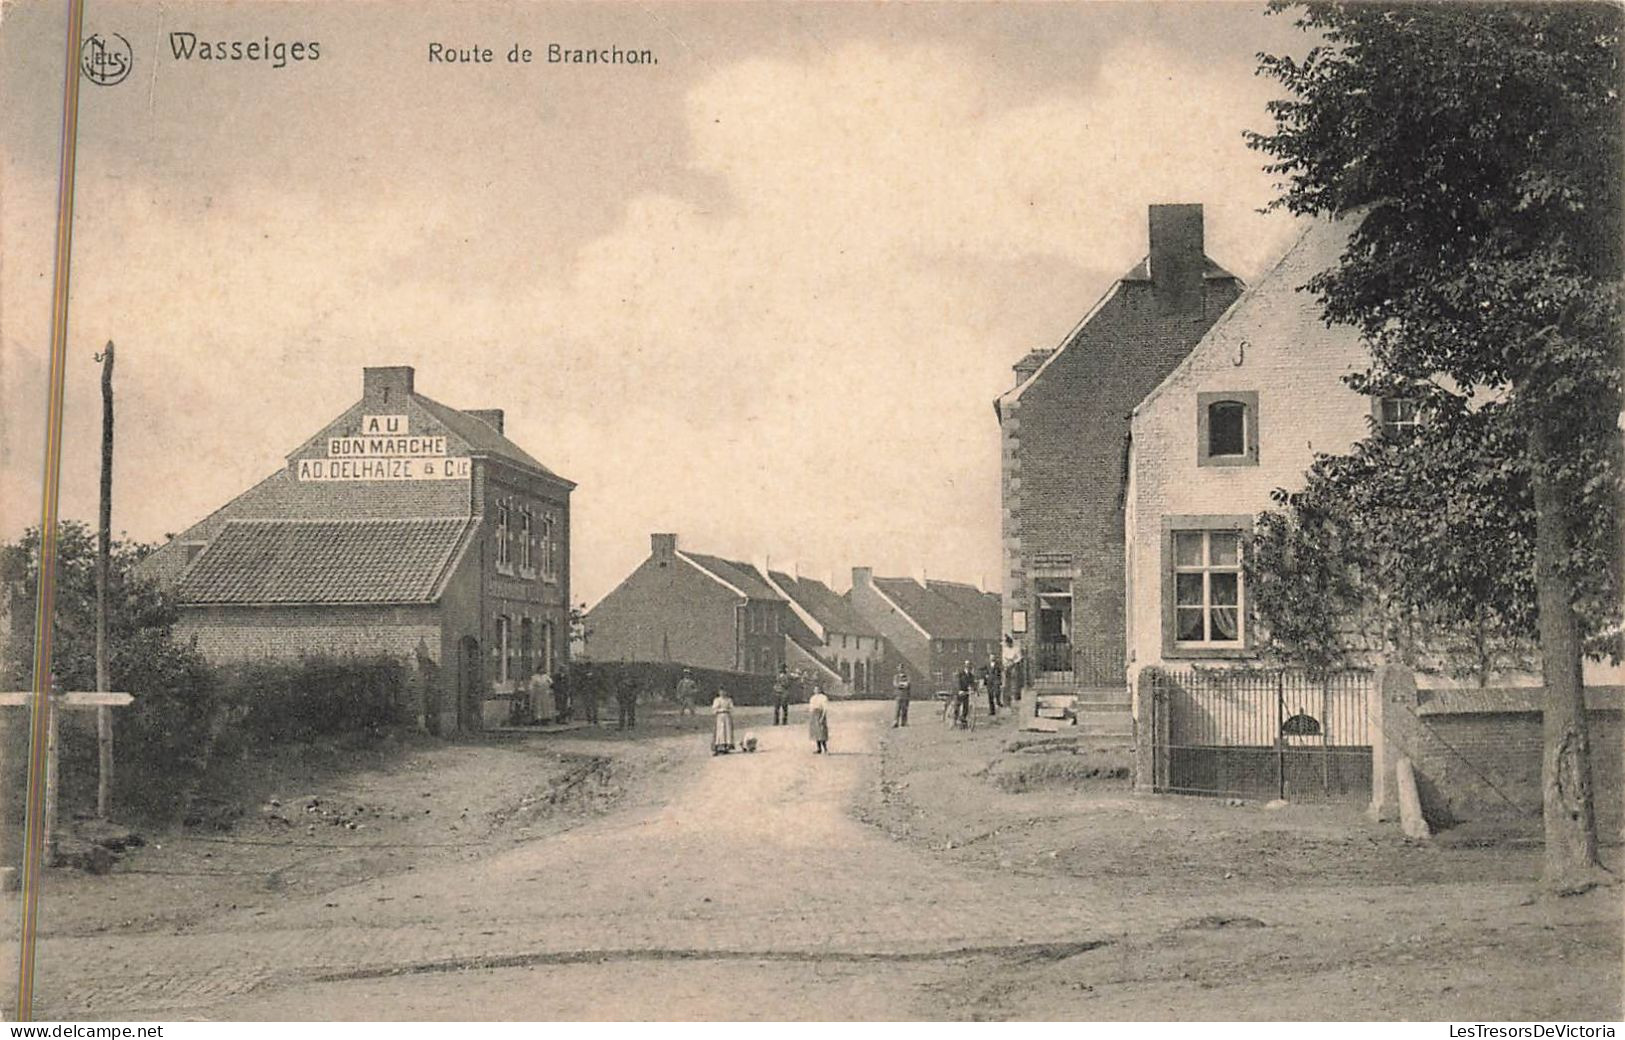 Belgique - Wasseiges - Route De Branchon - Edit. J. Léonard Pirson - AD. Delhaize & Cie -  Carte Postale Ancienne - Borgworm